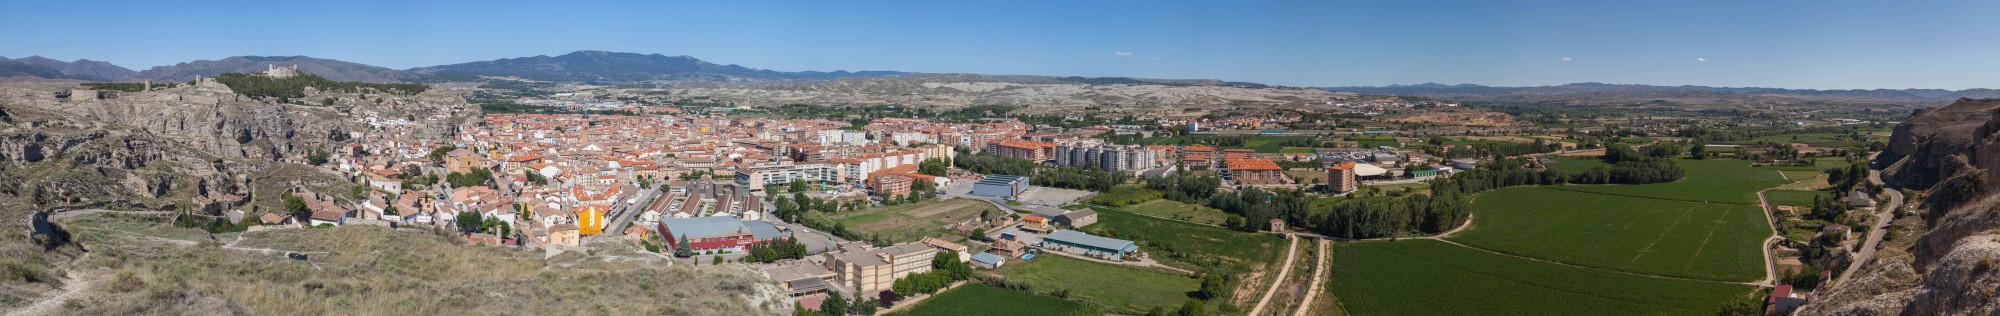 Vista panorámica de Calatayud desde San Roque, Aragón, España, 2014-07-12, DD 16-20 PAN